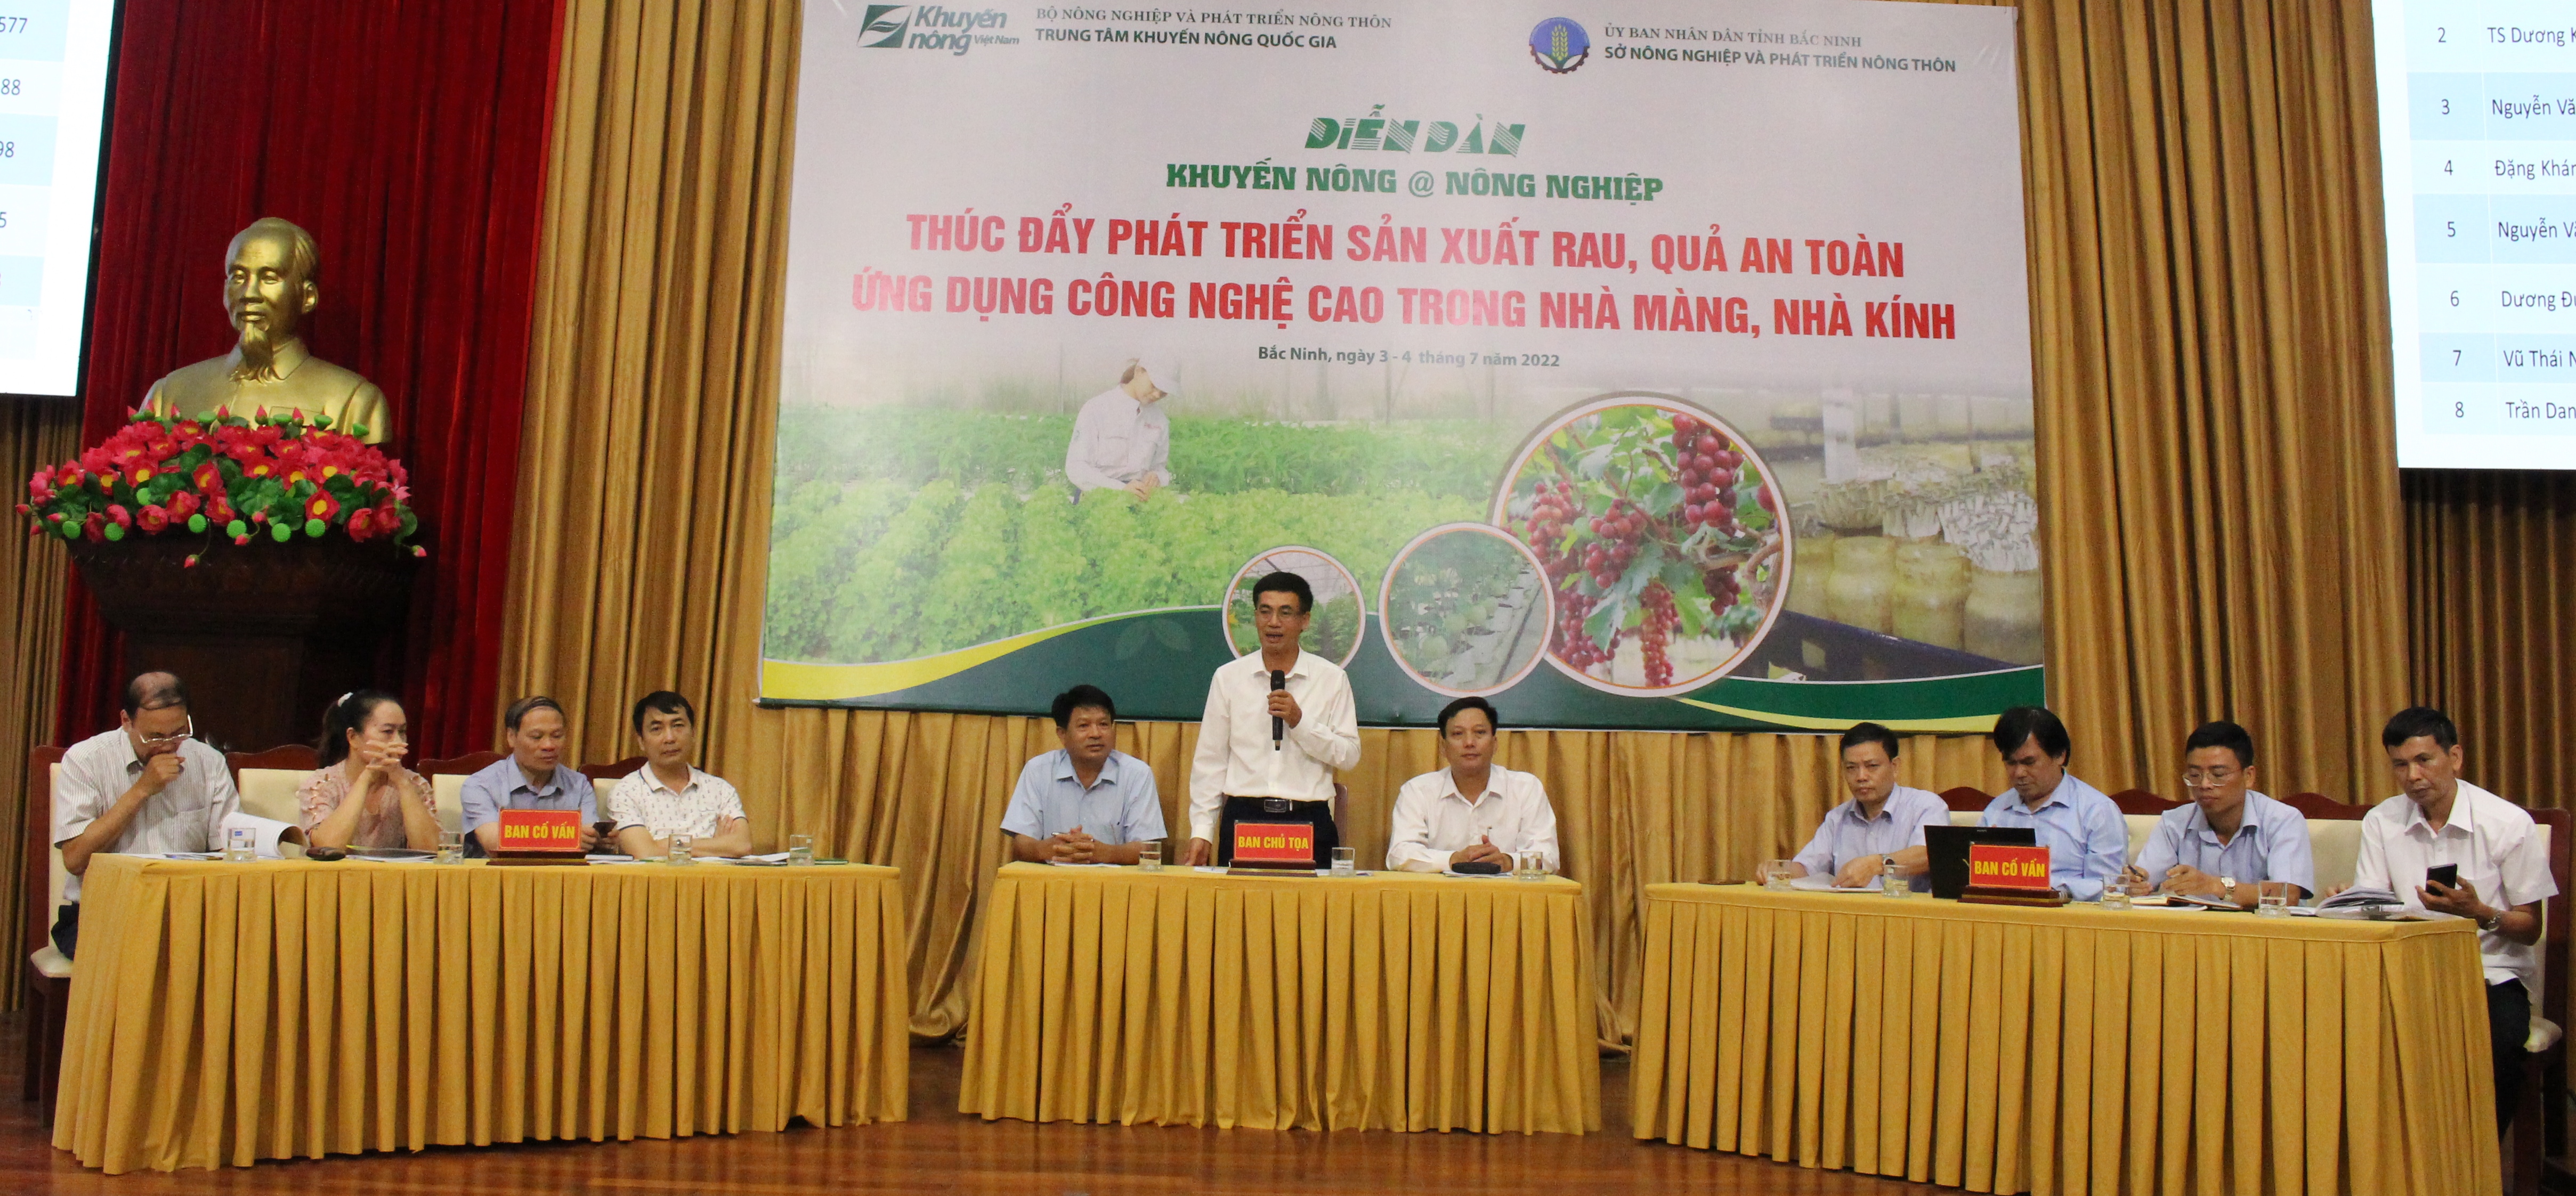 Bắc Ninh: Diễn đàn Khuyến nông @Nông nghiệp “Thúc đẩy phát triển sản xuất rau, quả an toàn ứng dụng công nghệ cao trong nhà màng, nhà kính”